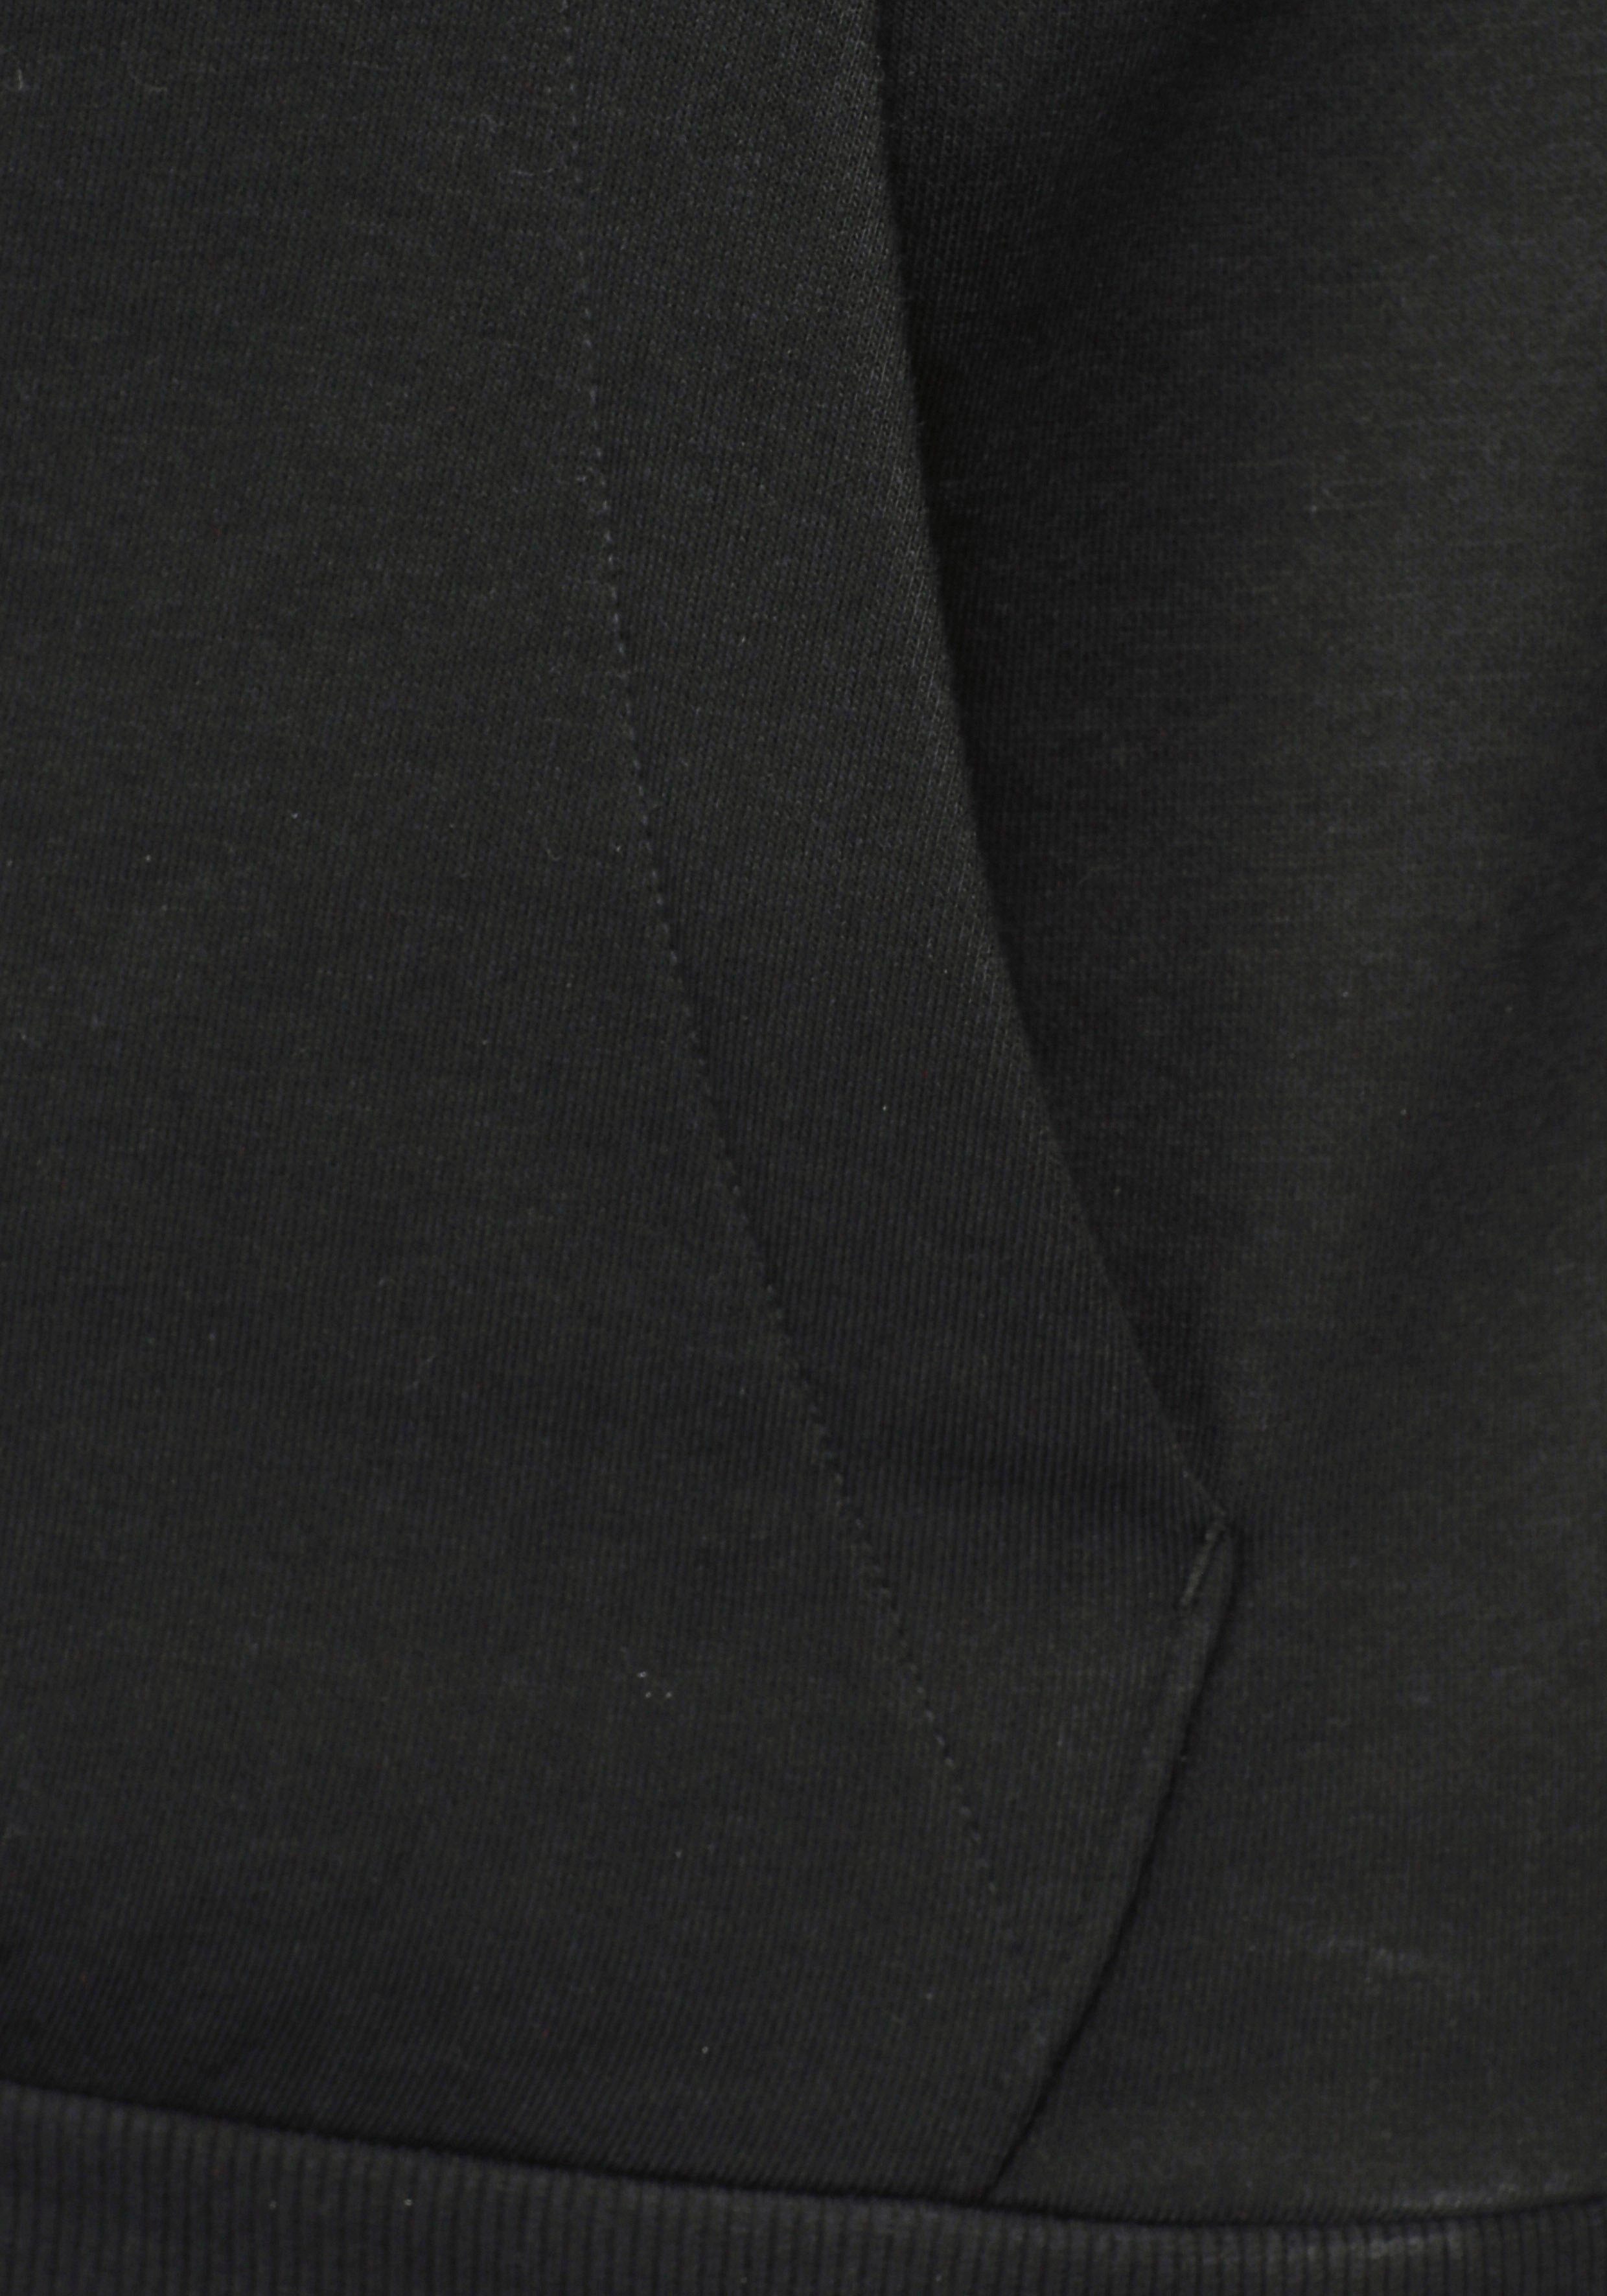 3STREIFEN / Sweatshirt ESSENTIALS FLEECE White adidas Black HOODIE Sportswear